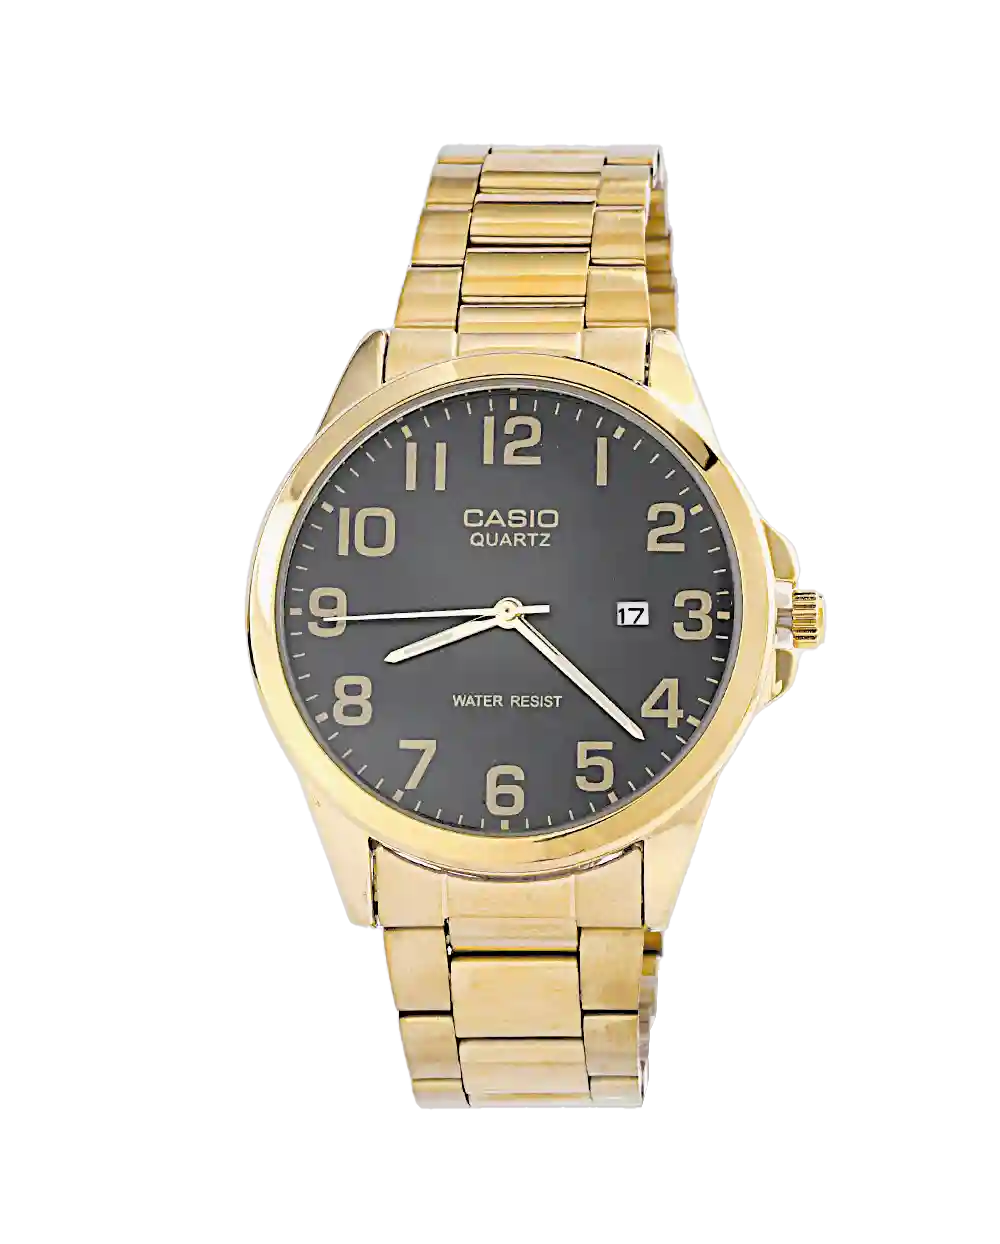 قیمت و خرید ساعت مچی مردانه کاسیو CASIO مدل 1557 رنگ طلایی همراه با ارسال رایگان و جعبه مخصوص | ساعت مچی مردانه کاسیو اصلی | ساعت مچی شیک و اصلی